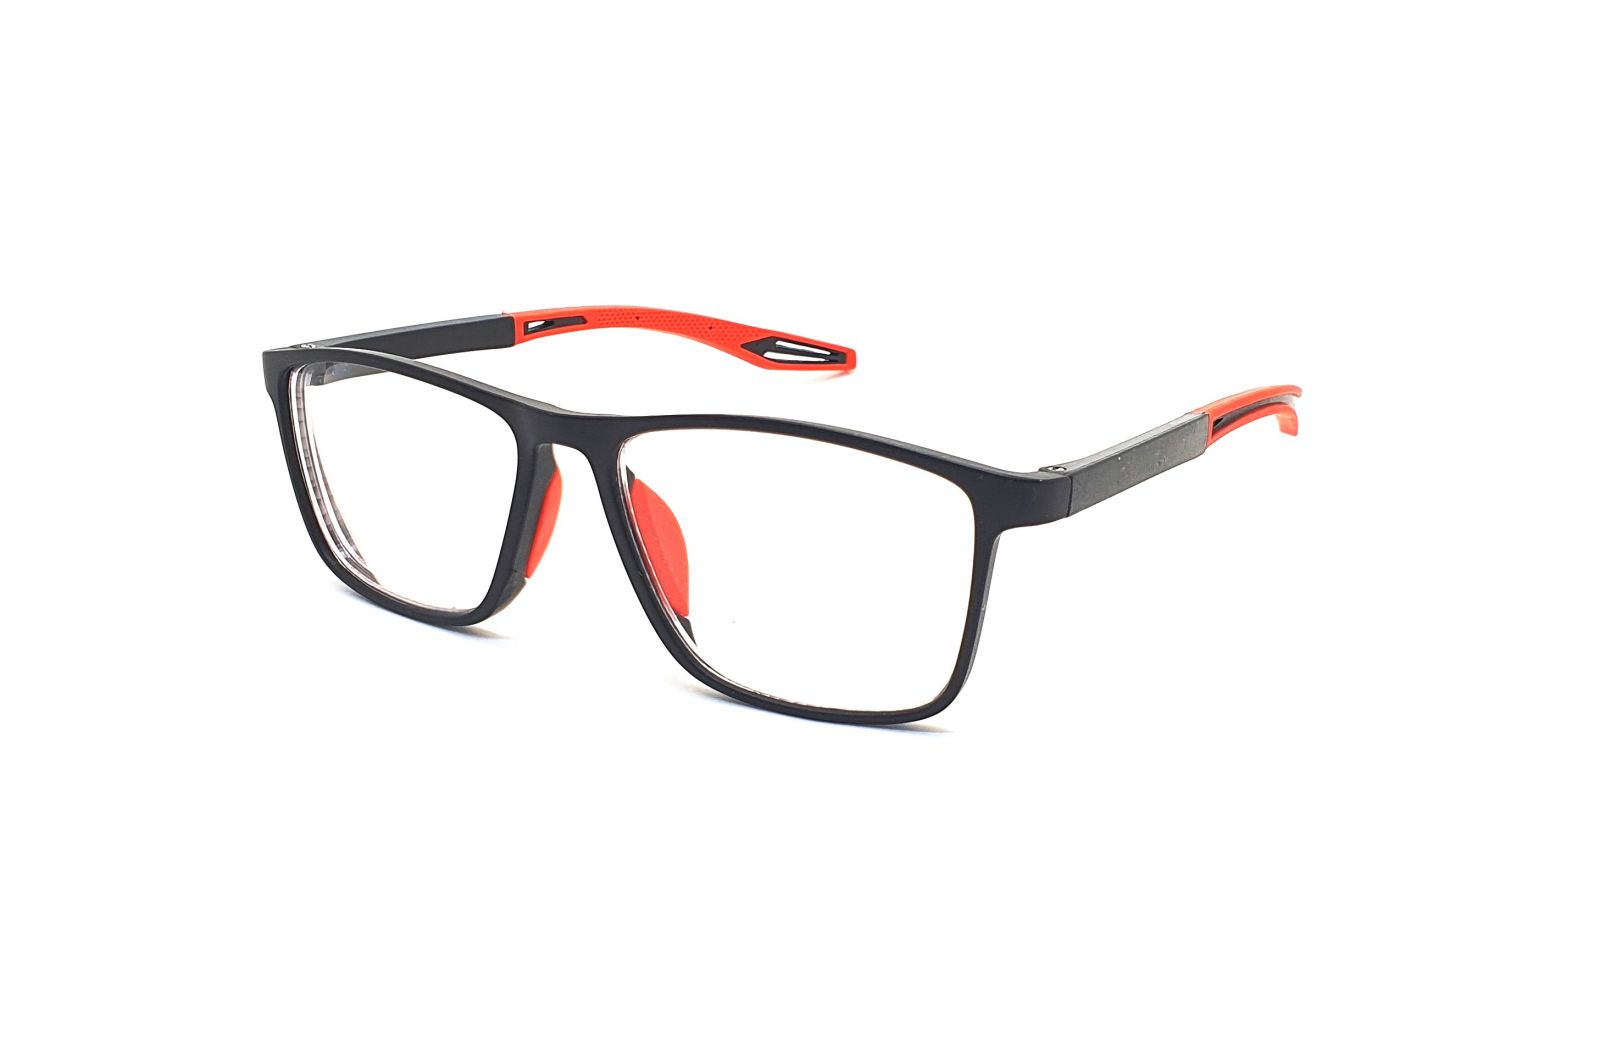 Samozabarvovací dioptrické brýle F04 / +1,50 black/red